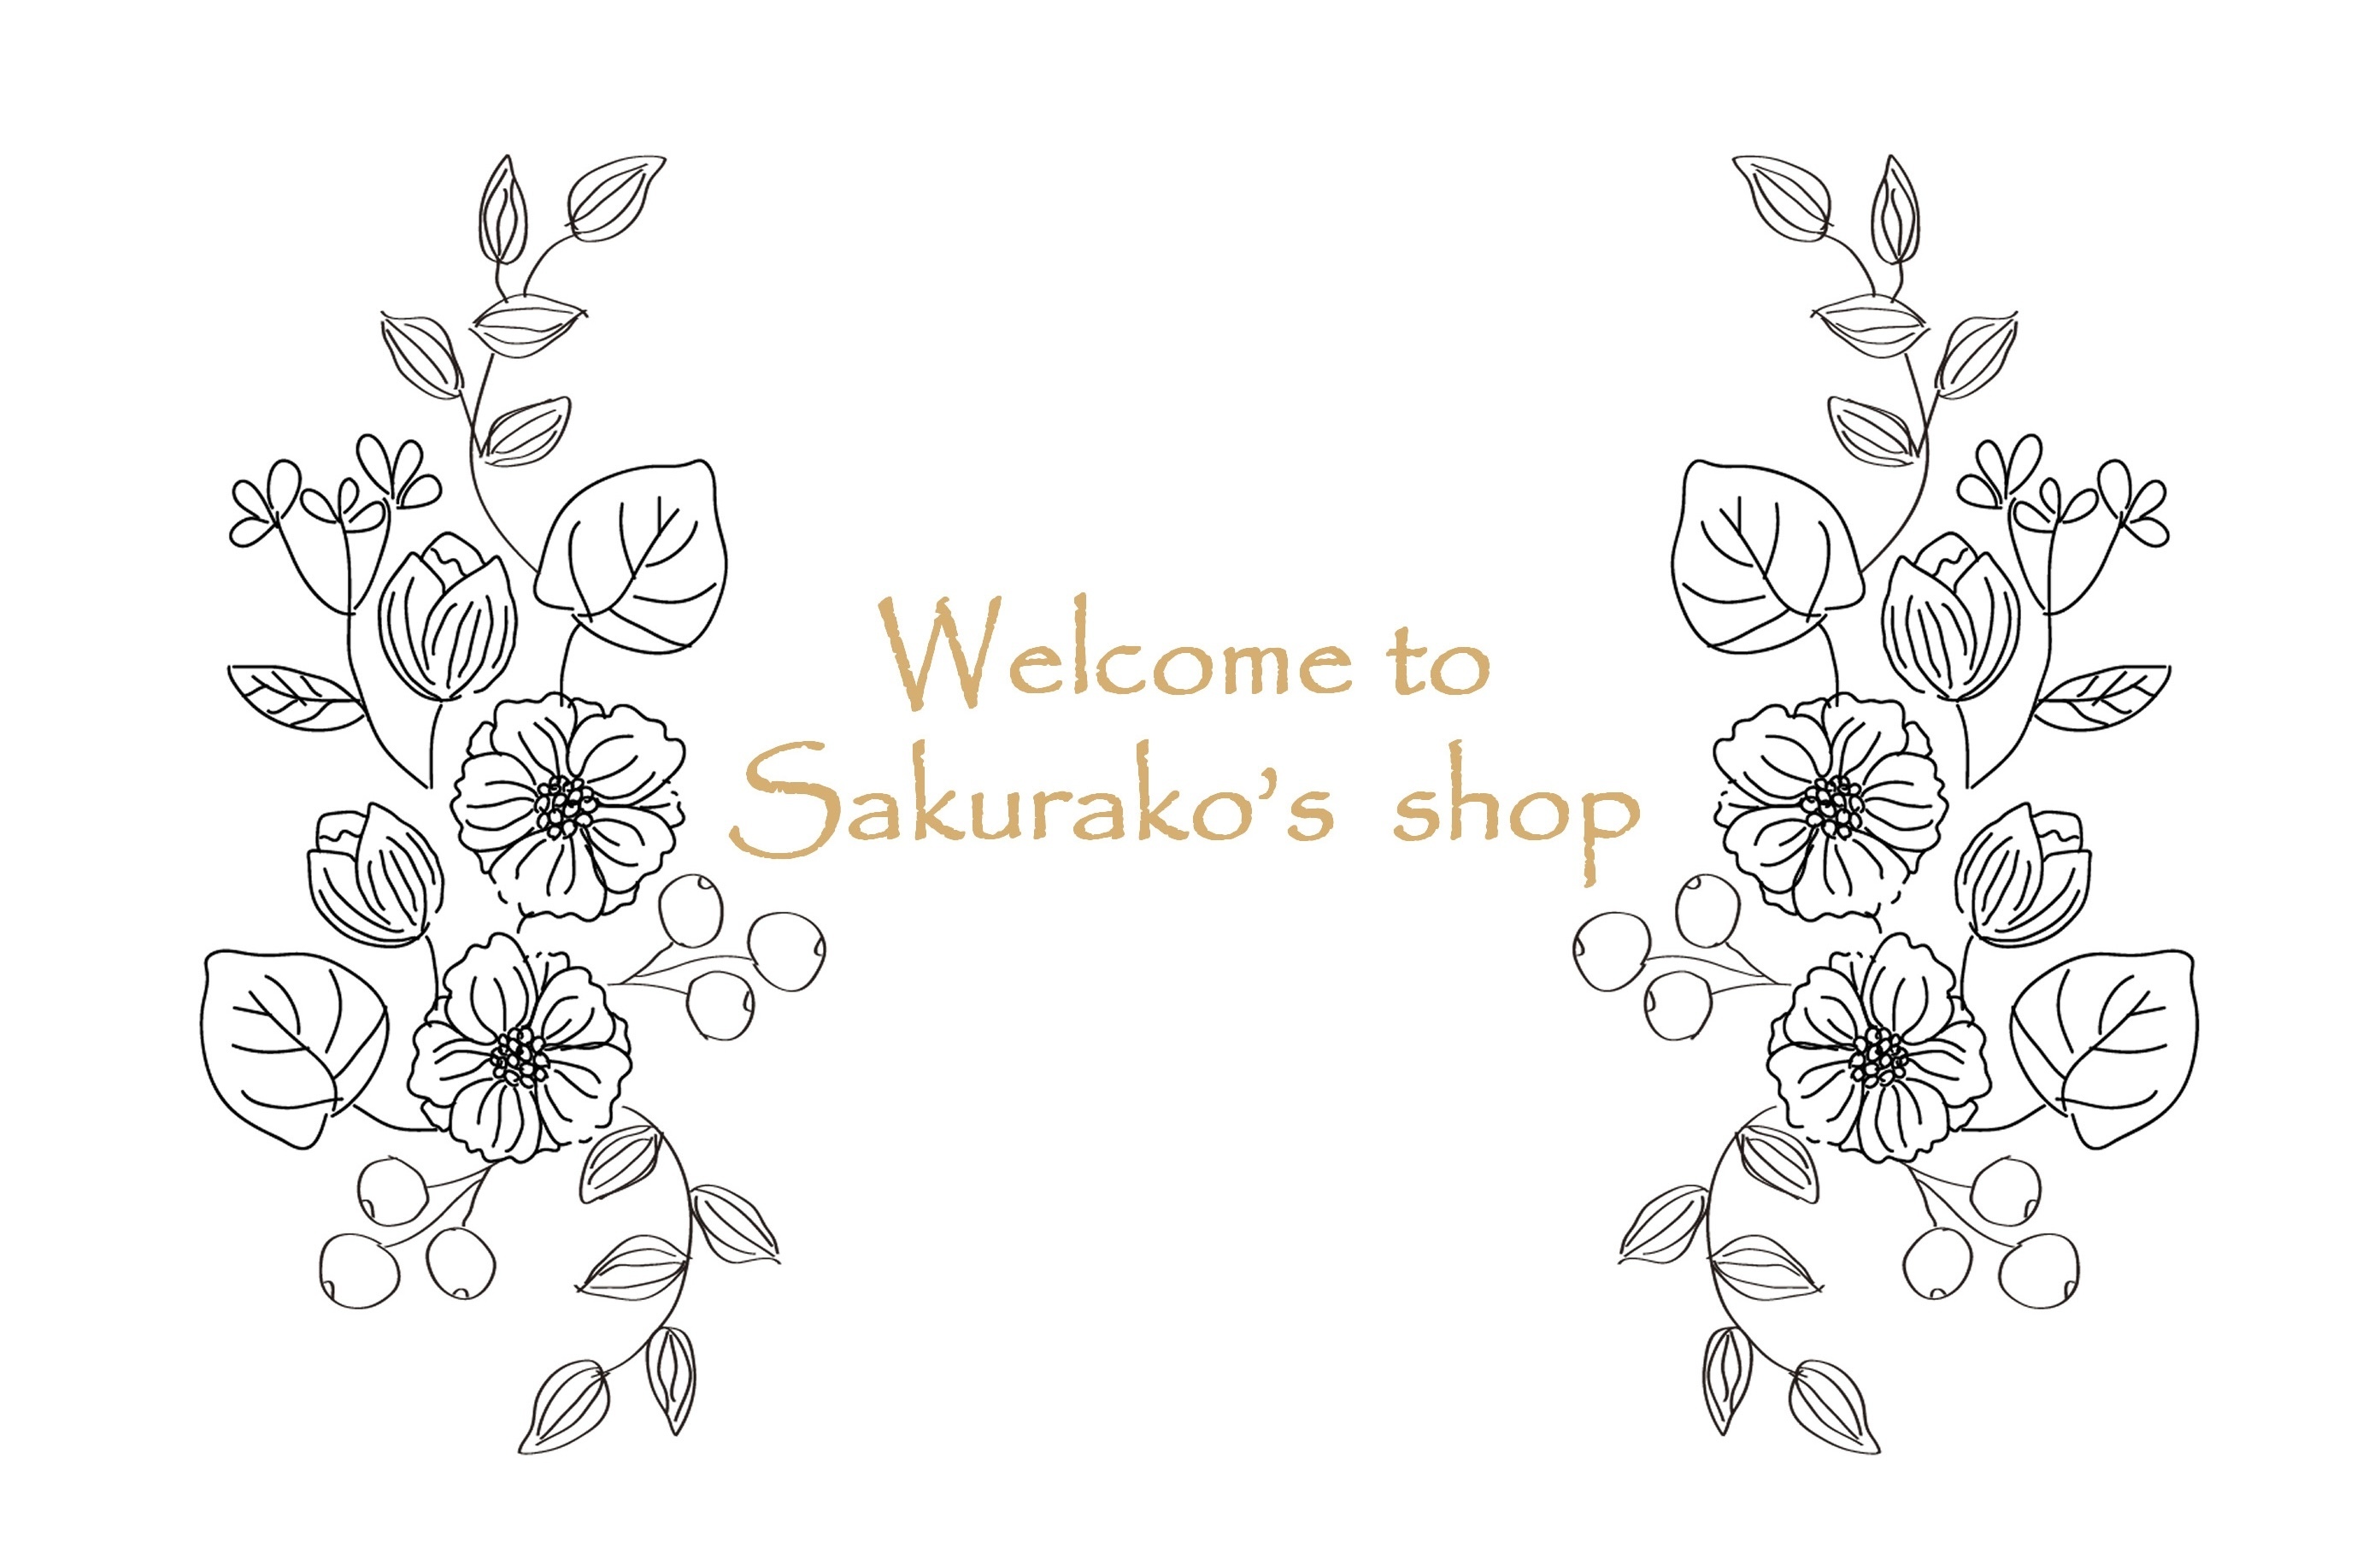 Sakurako's Shop